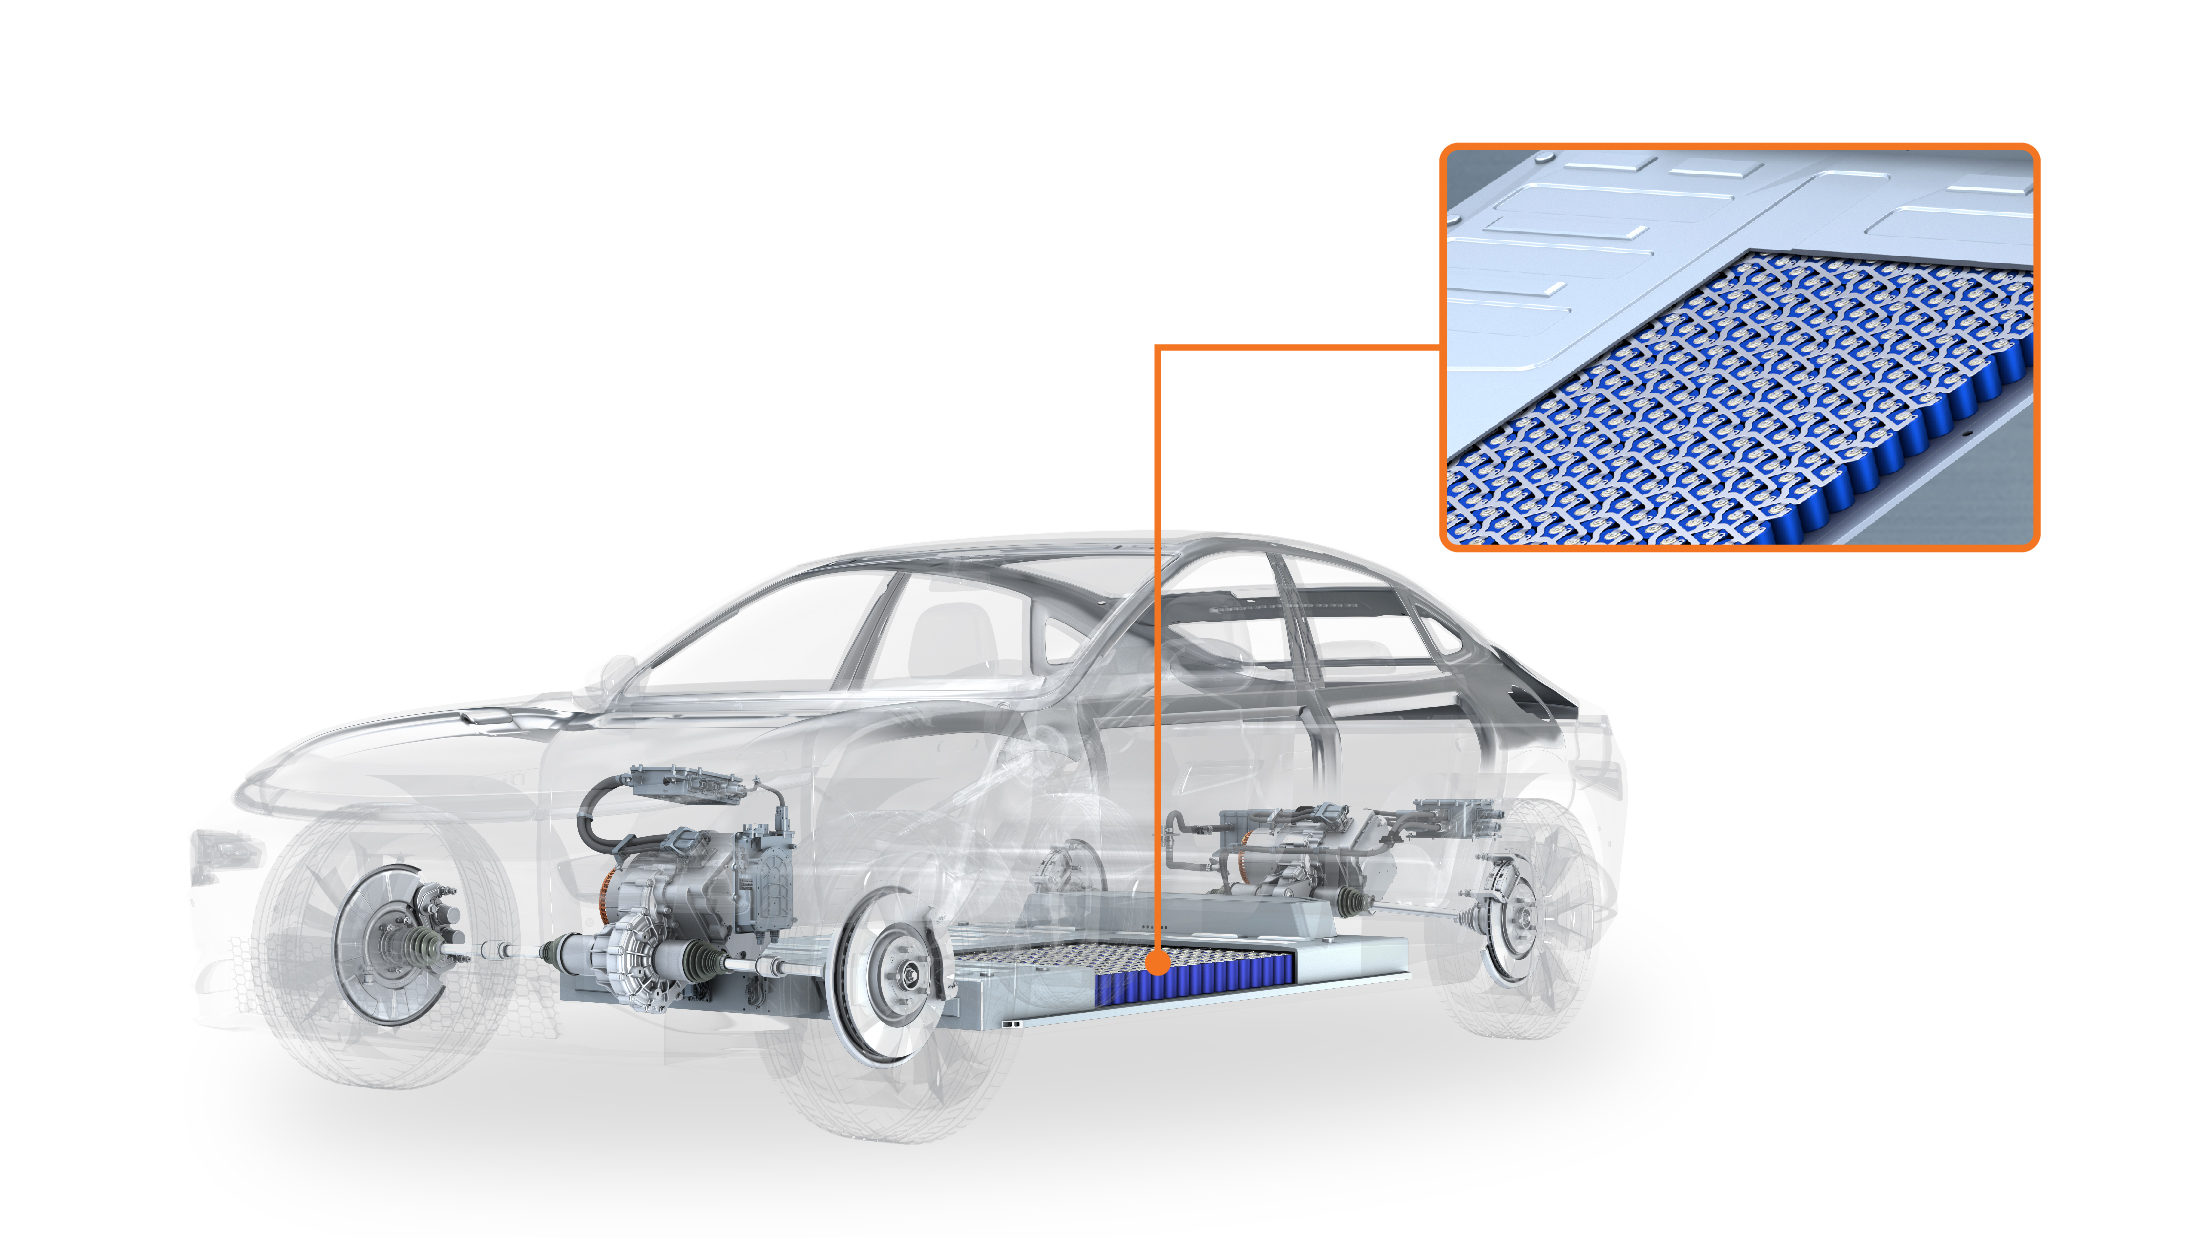 激光焊接电动汽车电池的 5 个主要考虑因素